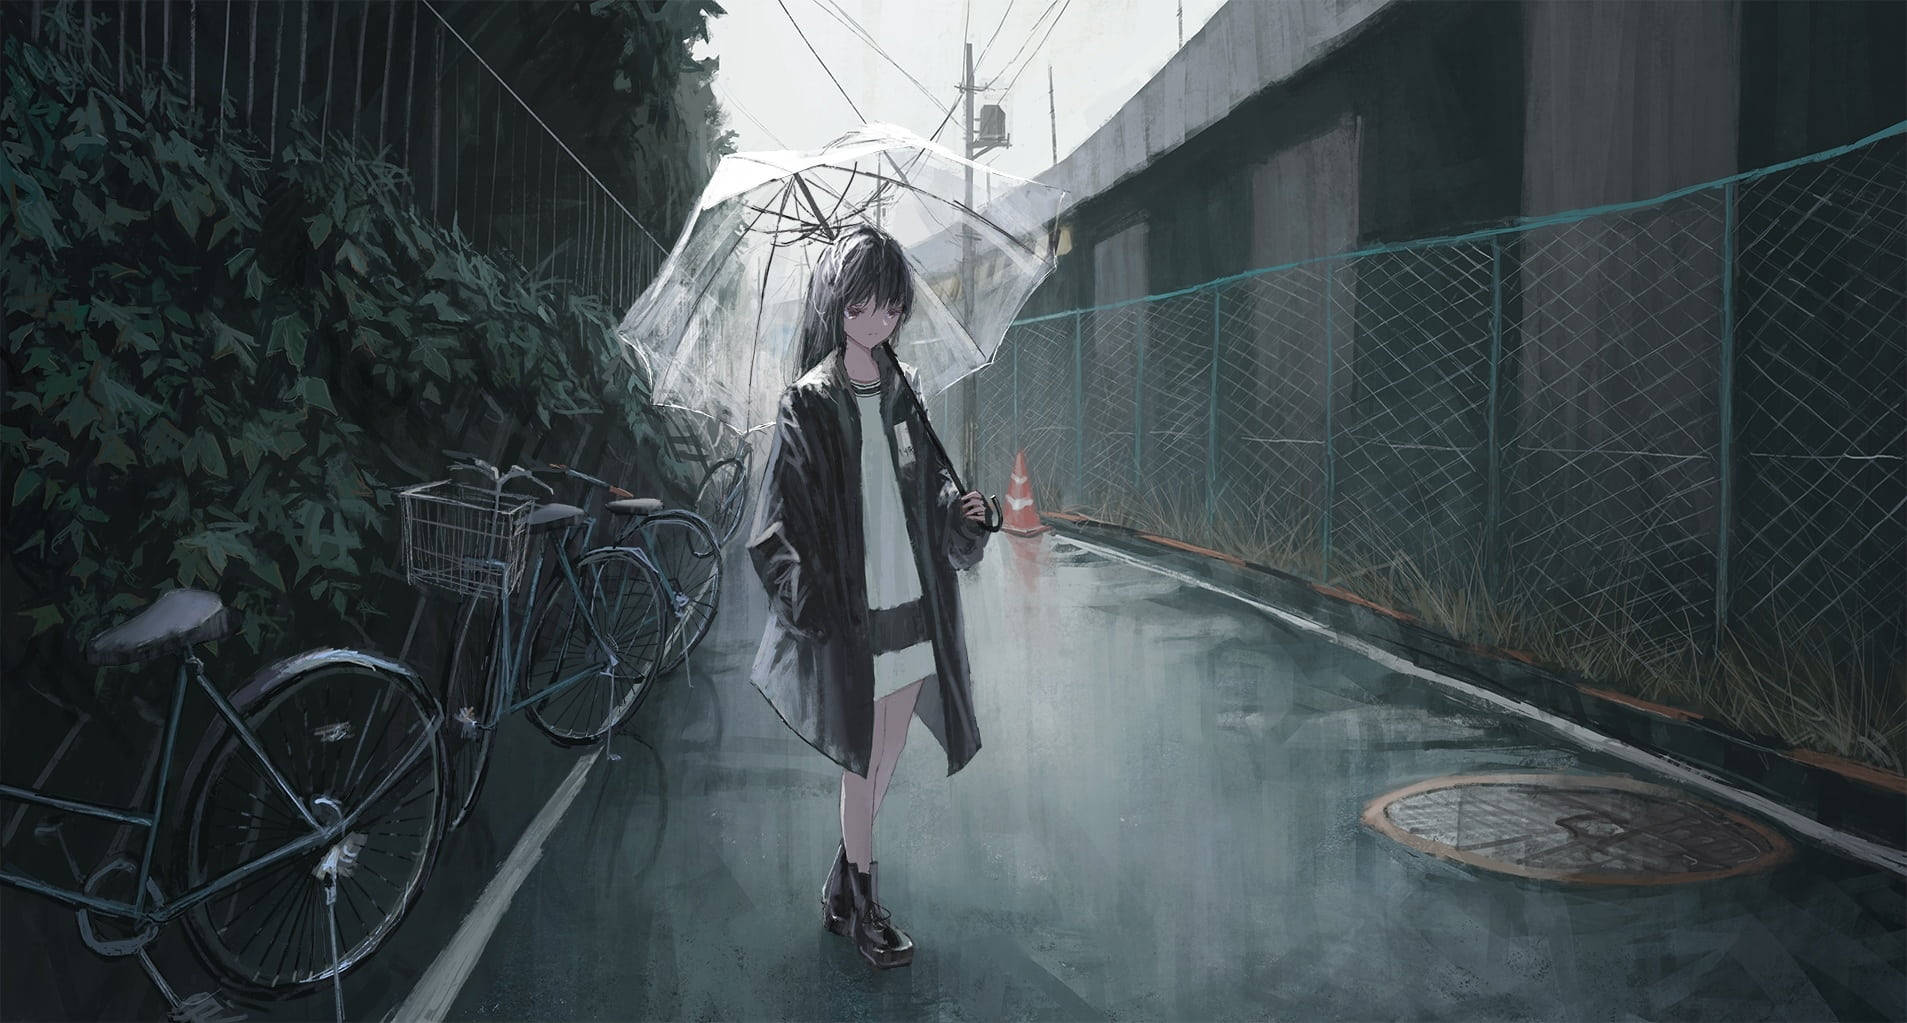 Aesthetic Sad Anime Girl Dark Empty Street